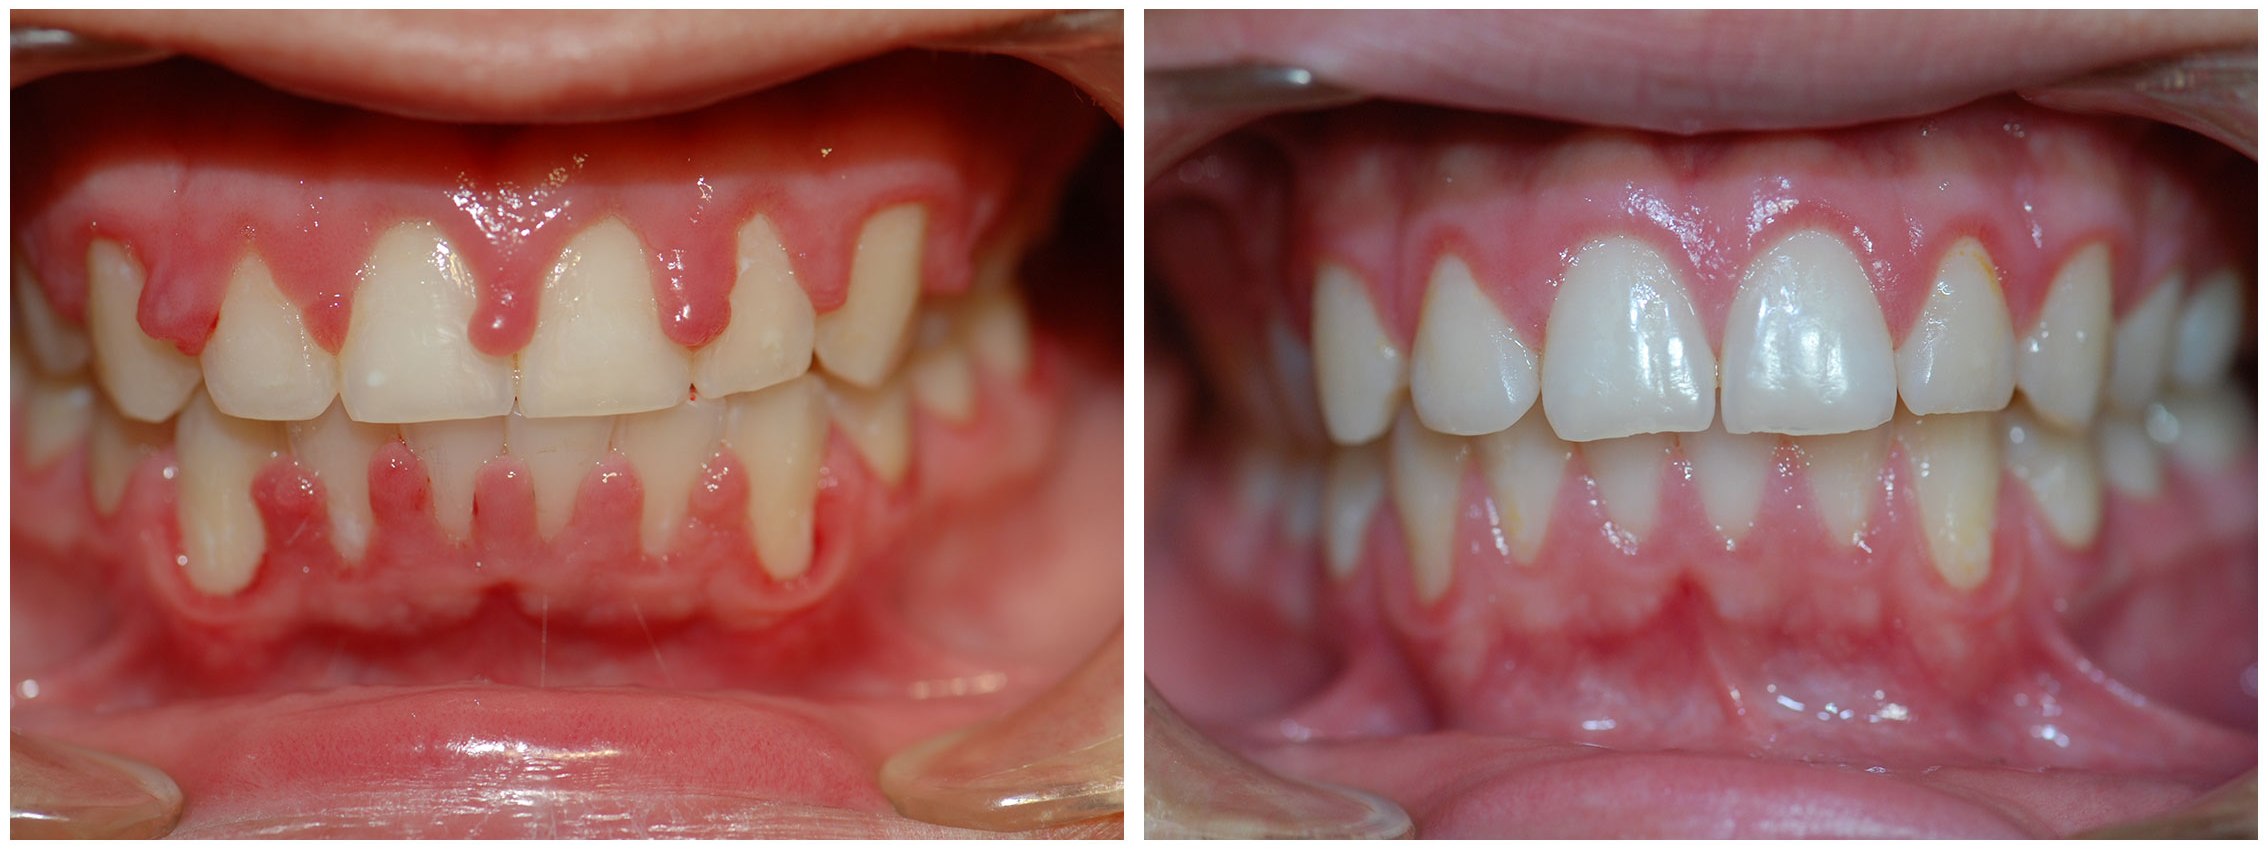 Kids Dental Braces Before & After